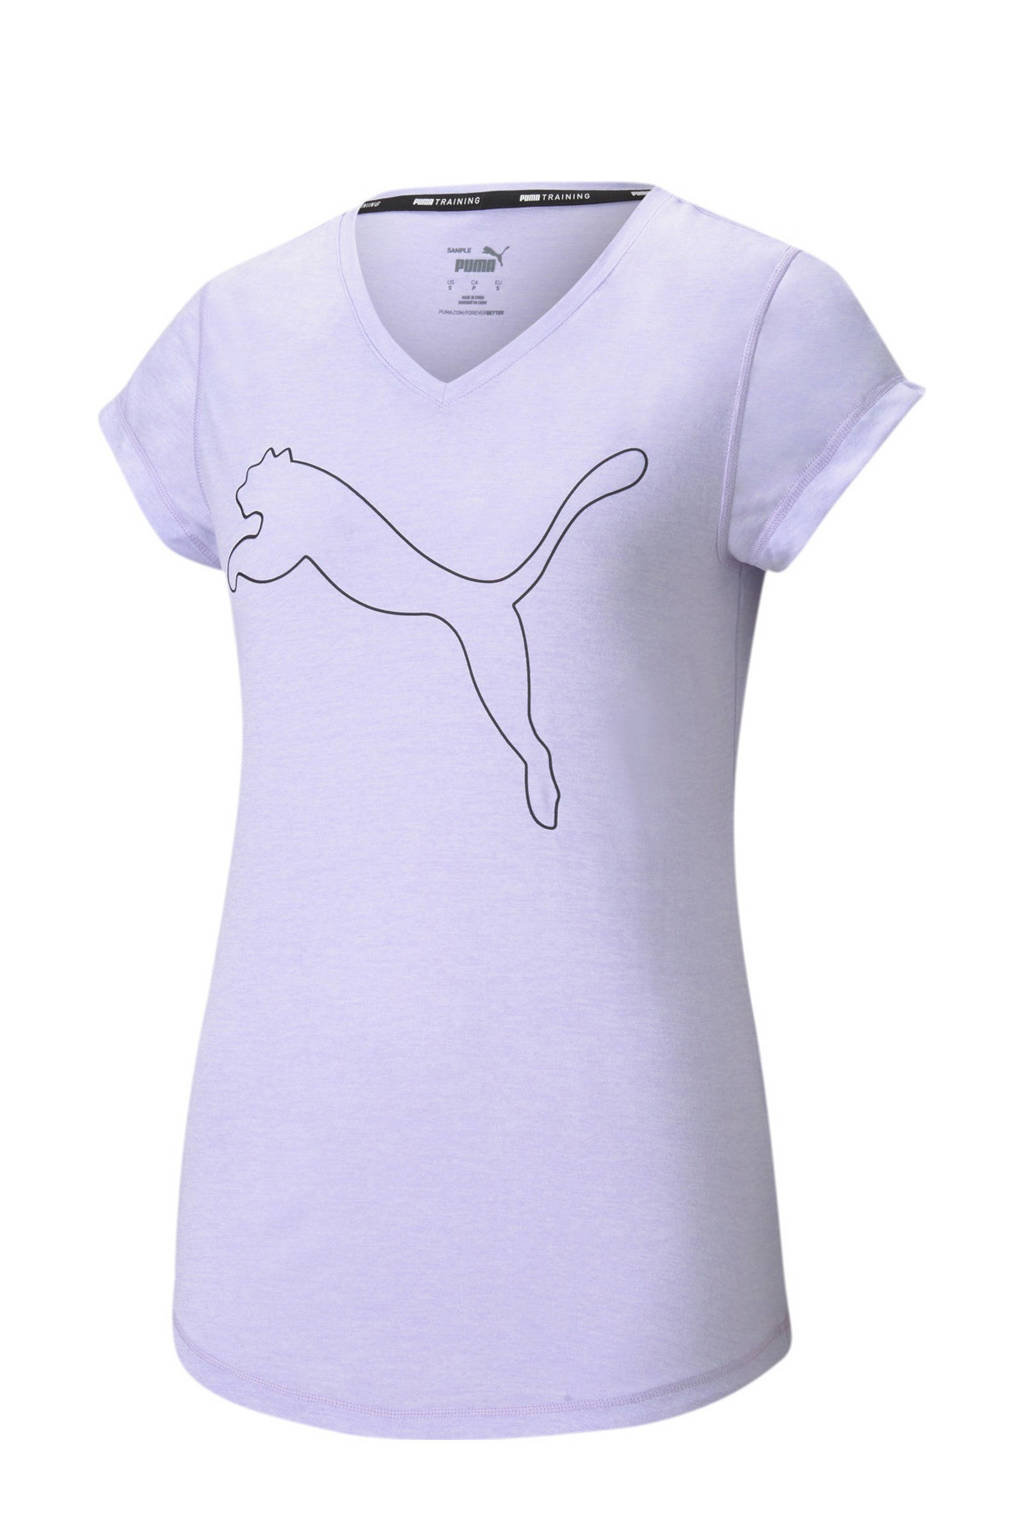 Puma sport T-shirt lila, Lila